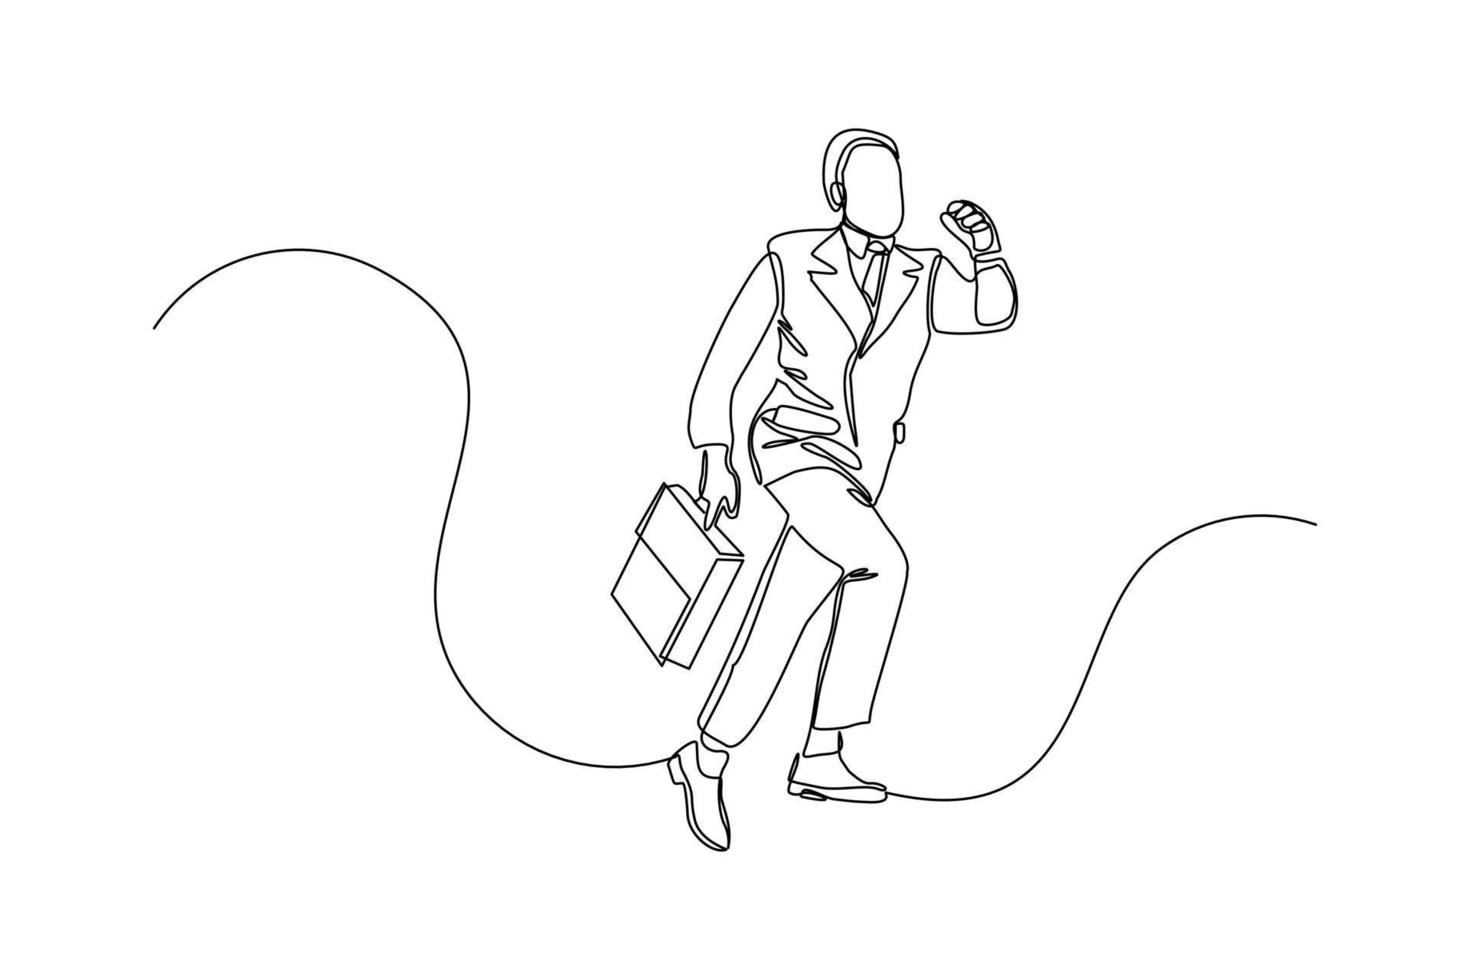 dibujo continuo de un joven hombre de negocios feliz sosteniendo un maletín. arte de una sola línea de oficinista. ilustración vectorial vector